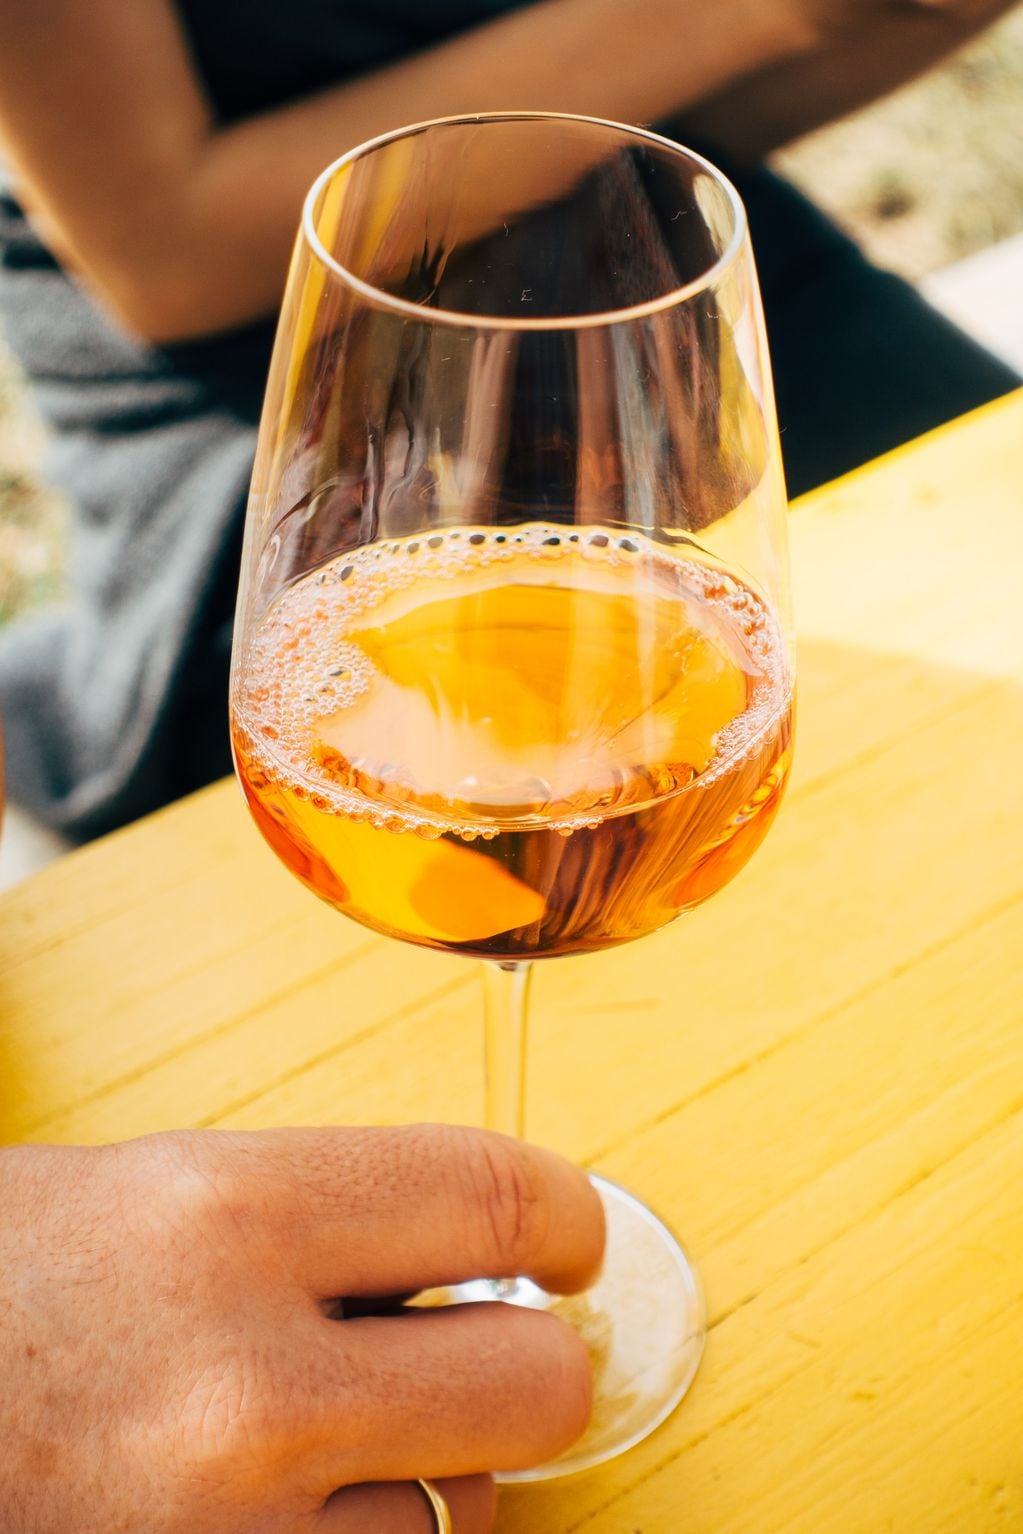 Calentar la copa ayuda a percibir aromas propios de la bebida. - Gentileza / Unsplash